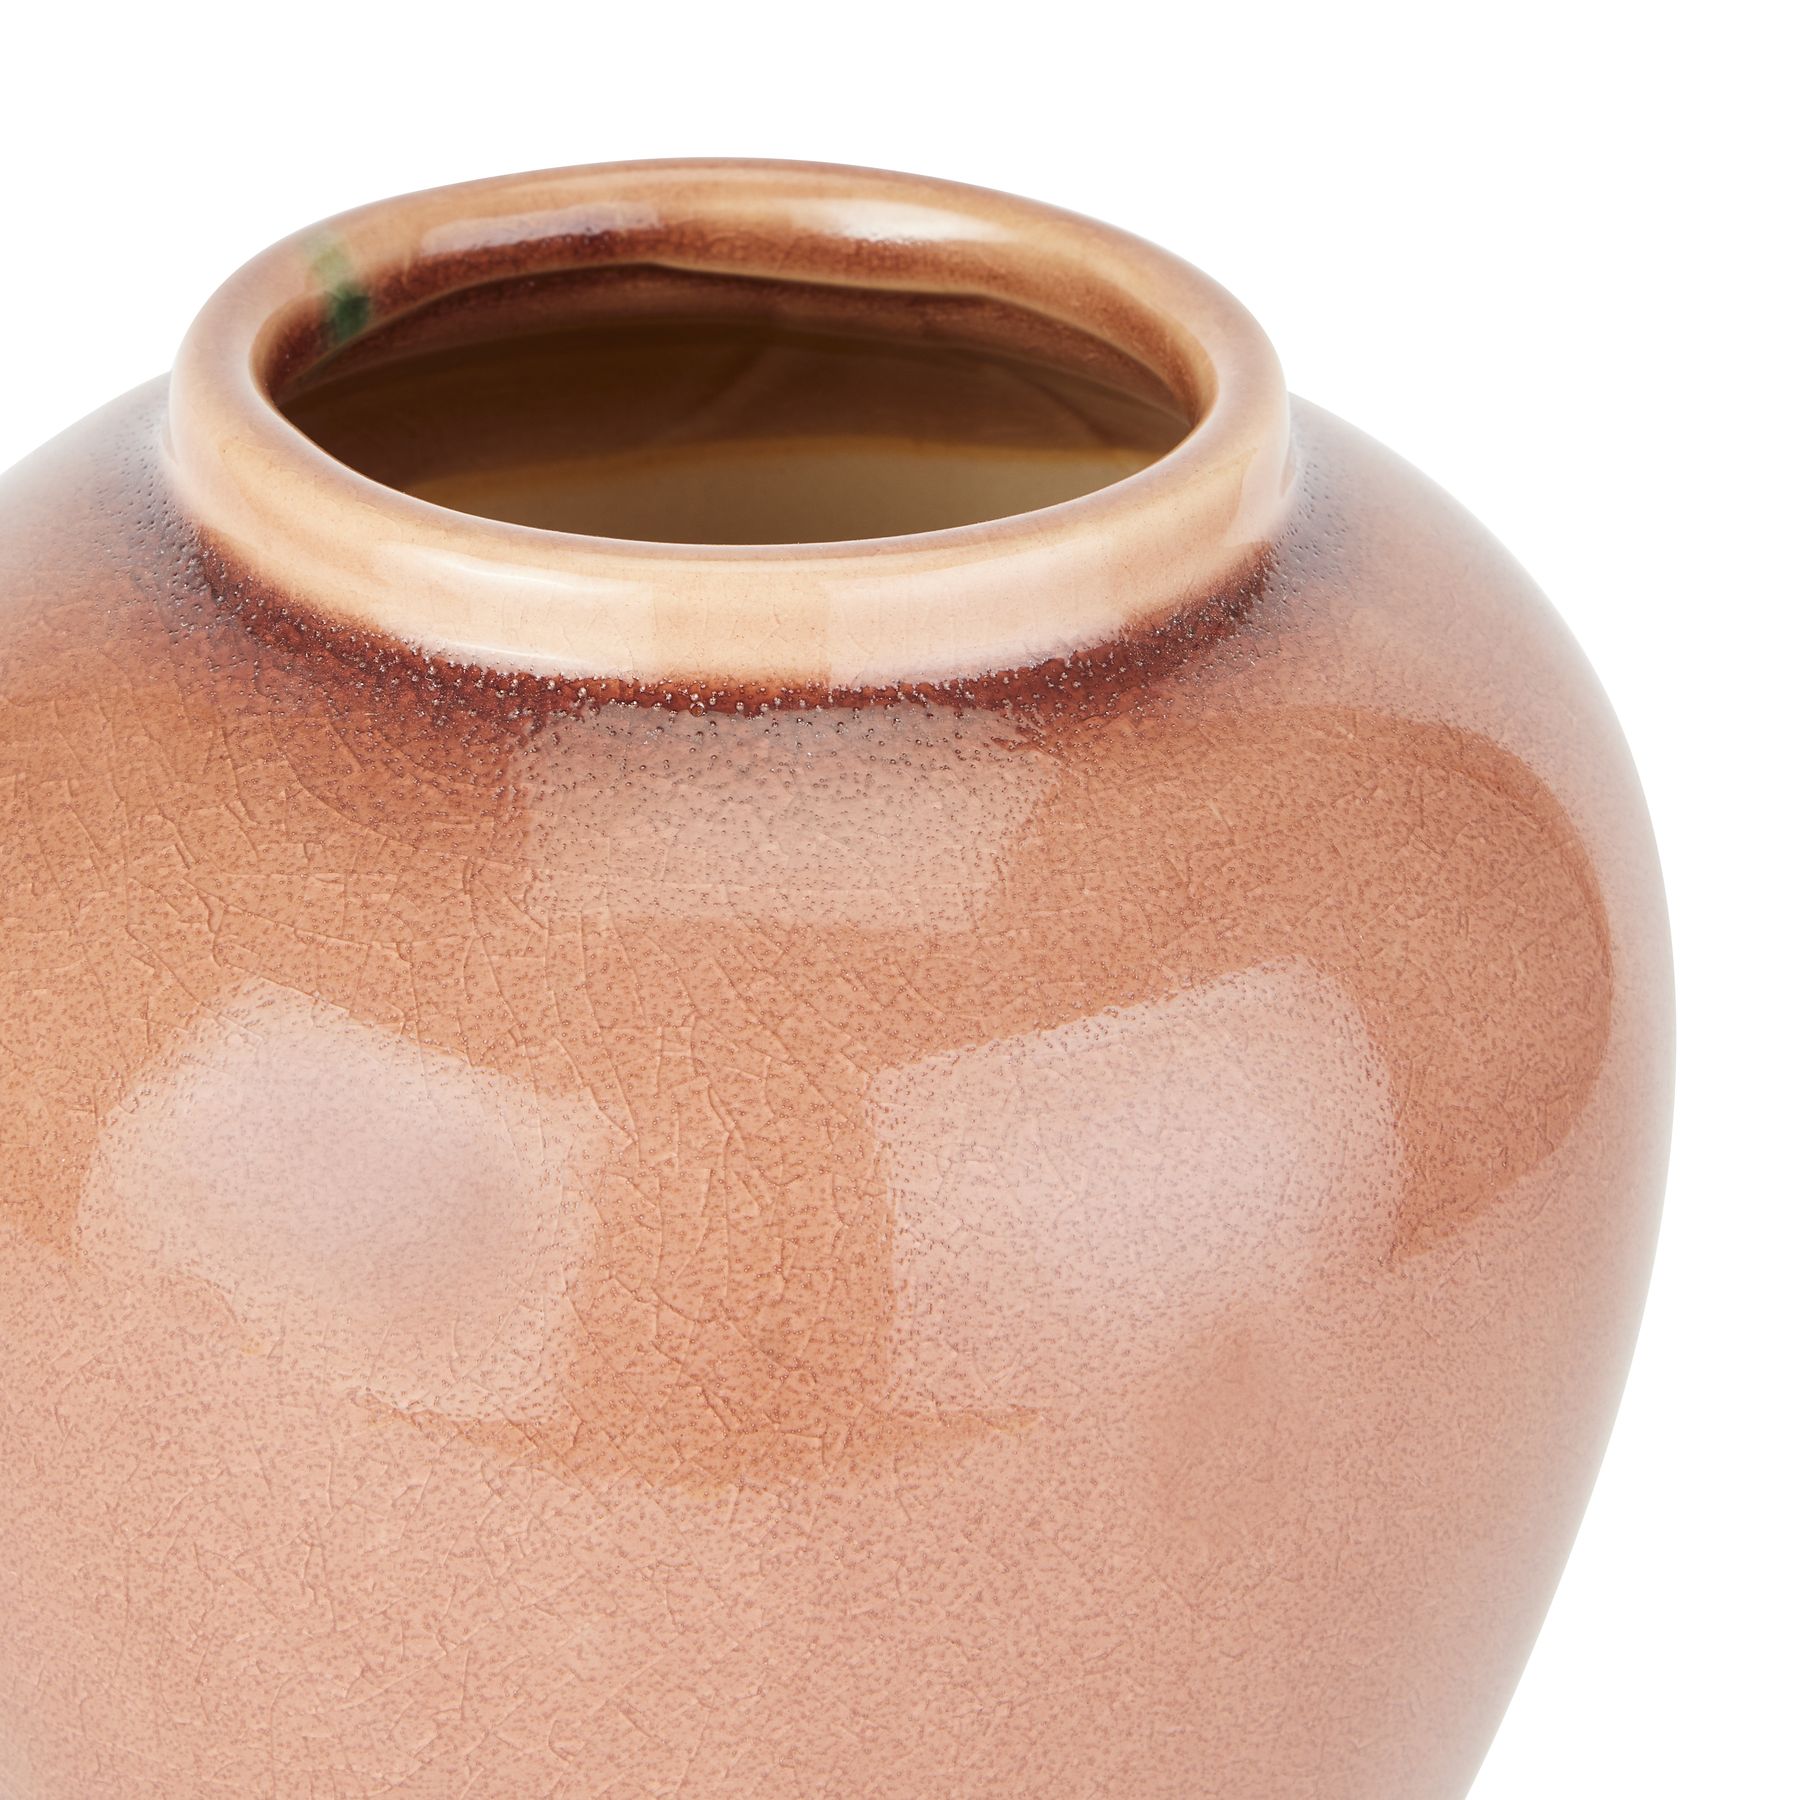 Seville Collection Blush Ginger Jar - Image 2